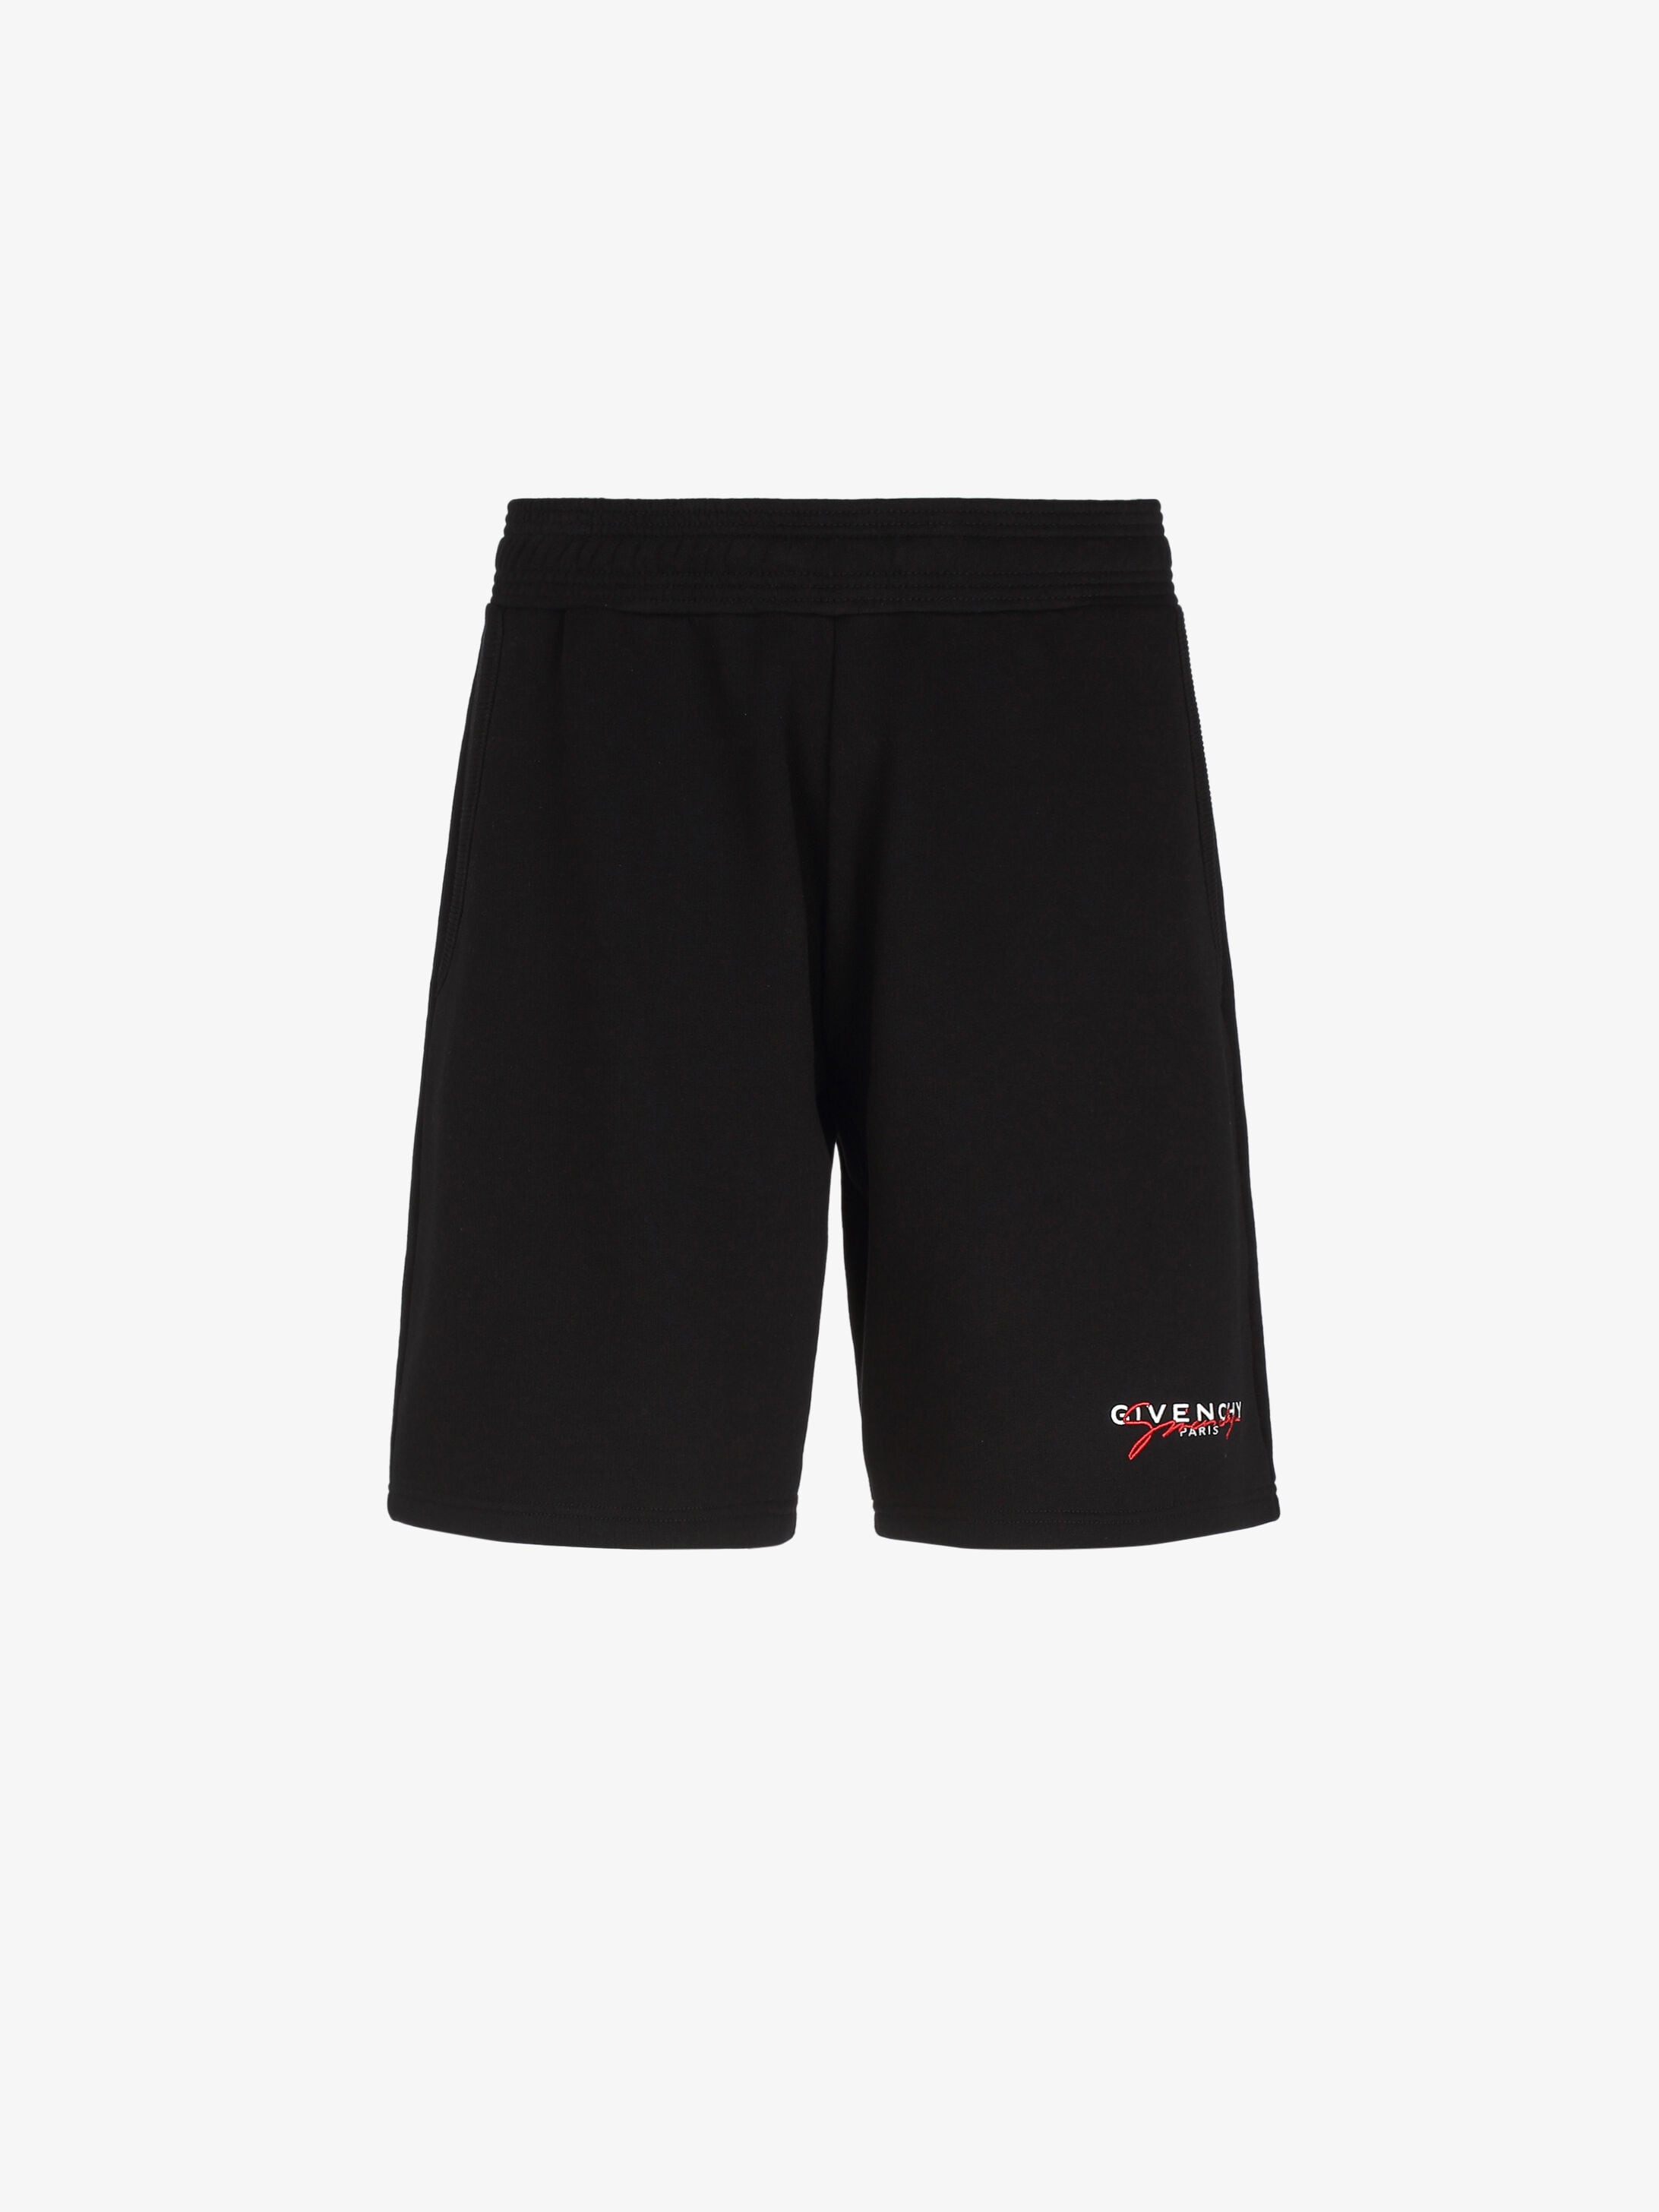 black givenchy shorts